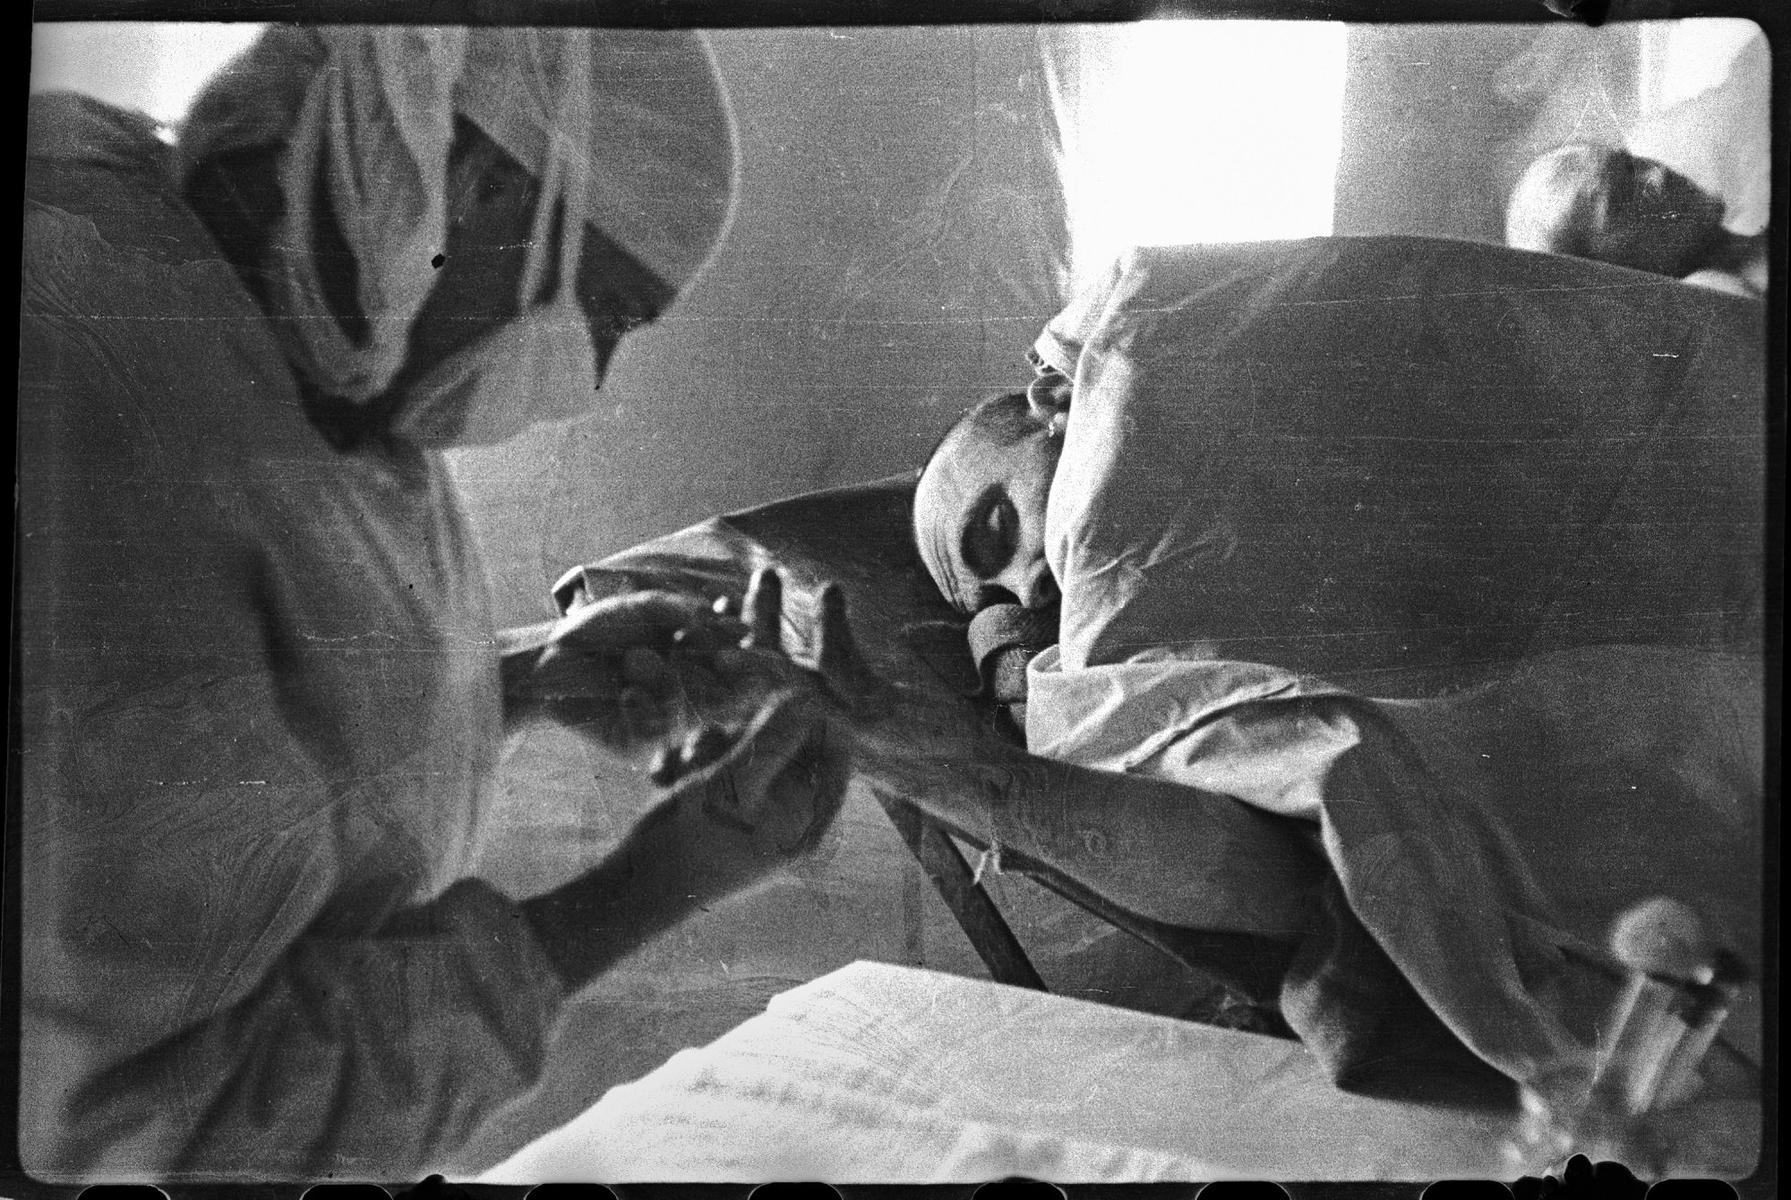 Большая перевязочная. Взятие крови у раненого Чуян для определения группы. 308 МСБ в поселке Шули (между Севастополем и Бахчисараем), 4-й Украинский фронт, 51-я армия, Крым. 28 апреля 1944 года